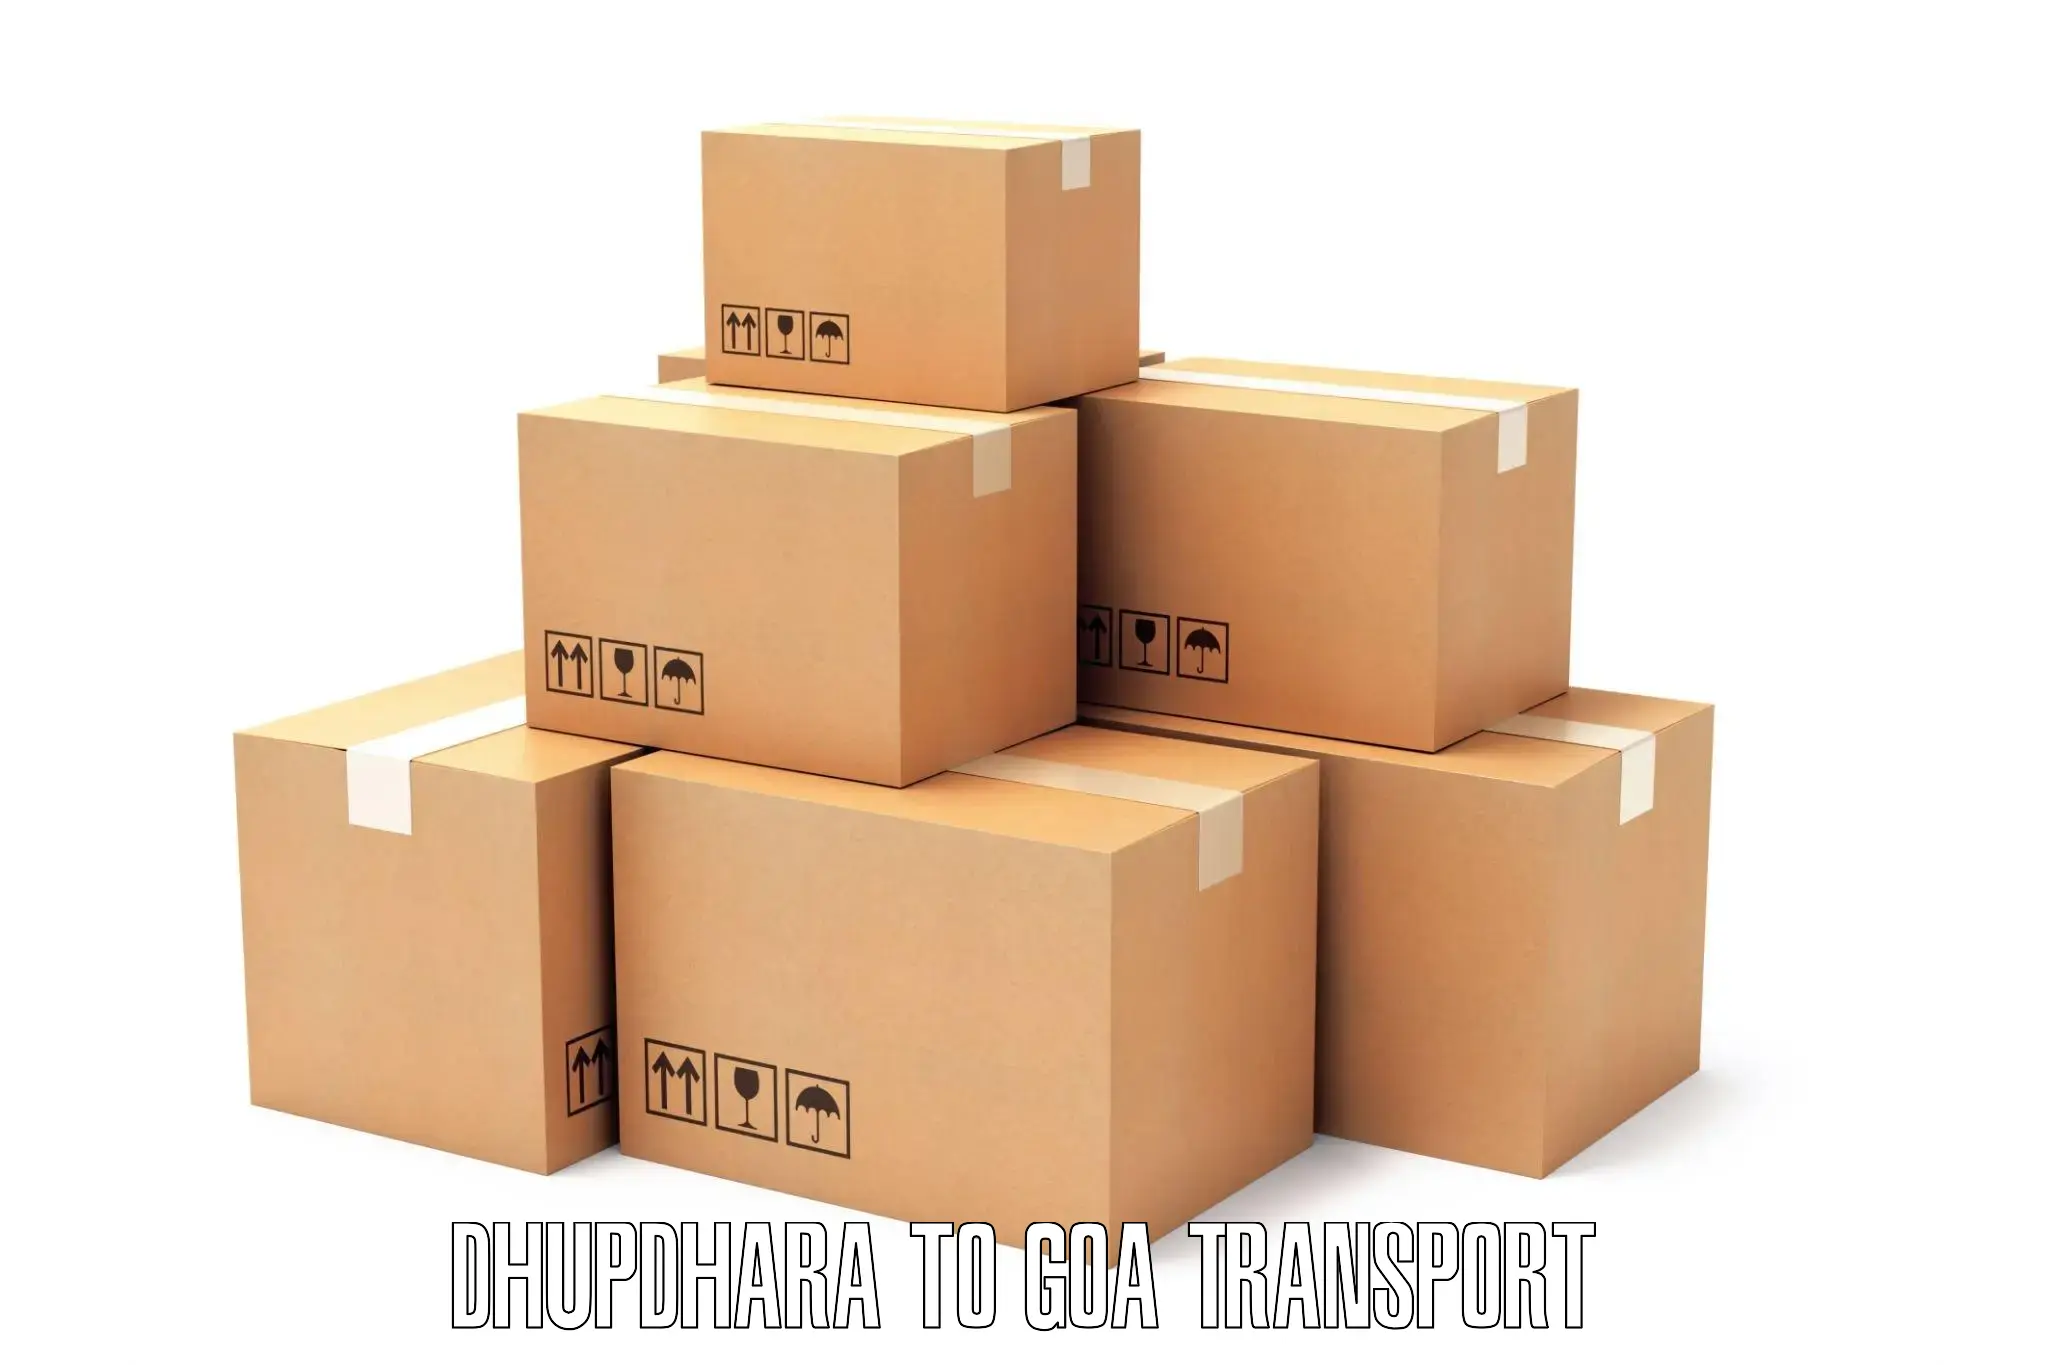 Intercity transport Dhupdhara to NIT Goa